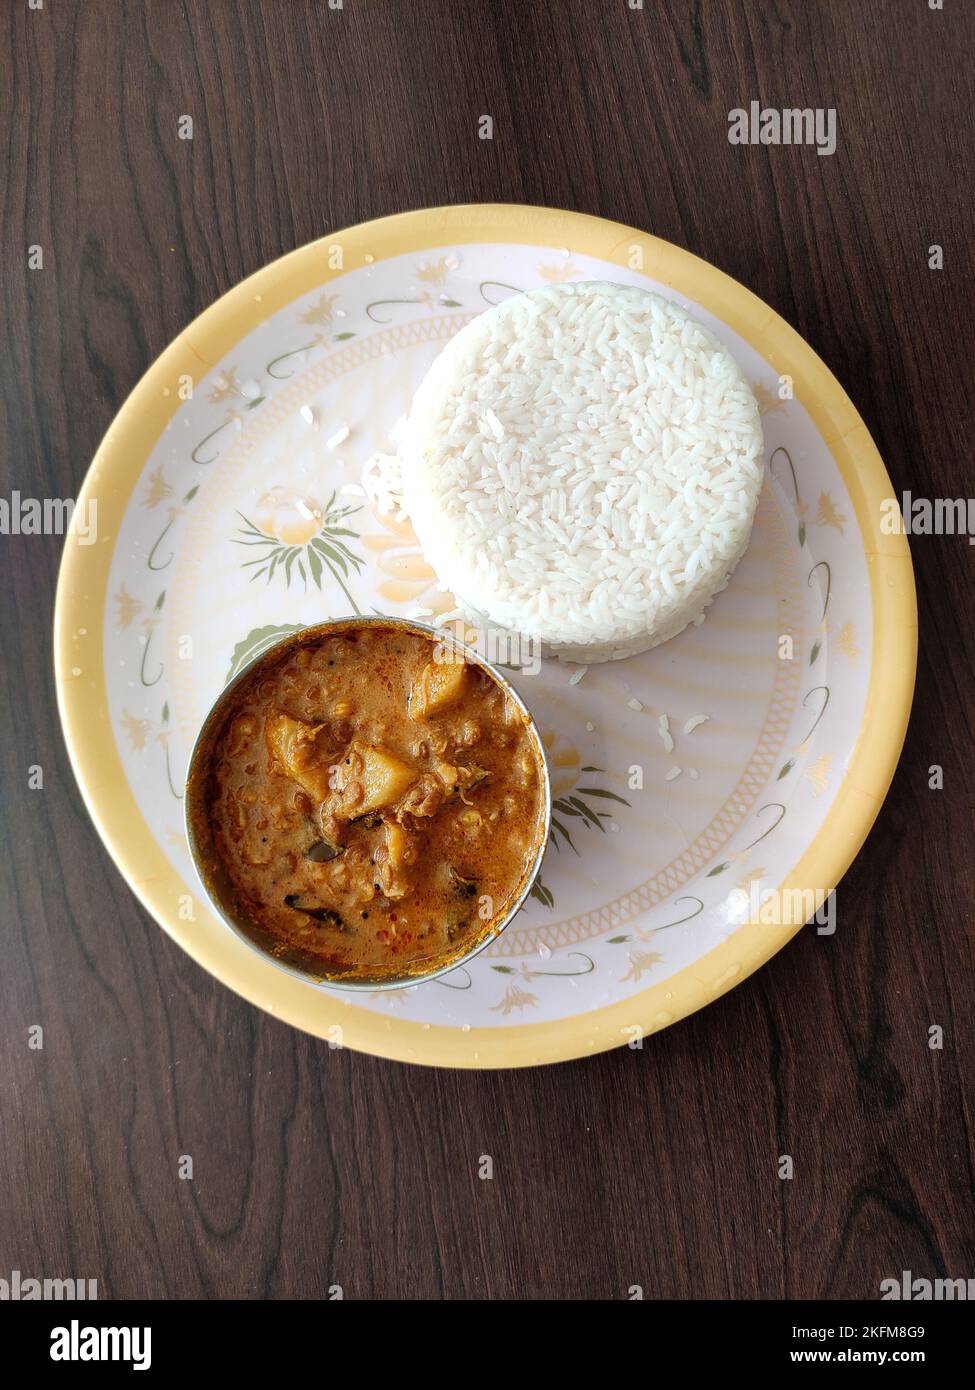 Pranzo al sacco Molake Kalu Saaru servito al piatto. Un piatto con riso bianco accompagnato da sambar a base di grammo di cavallo germogliato. Foto Stock